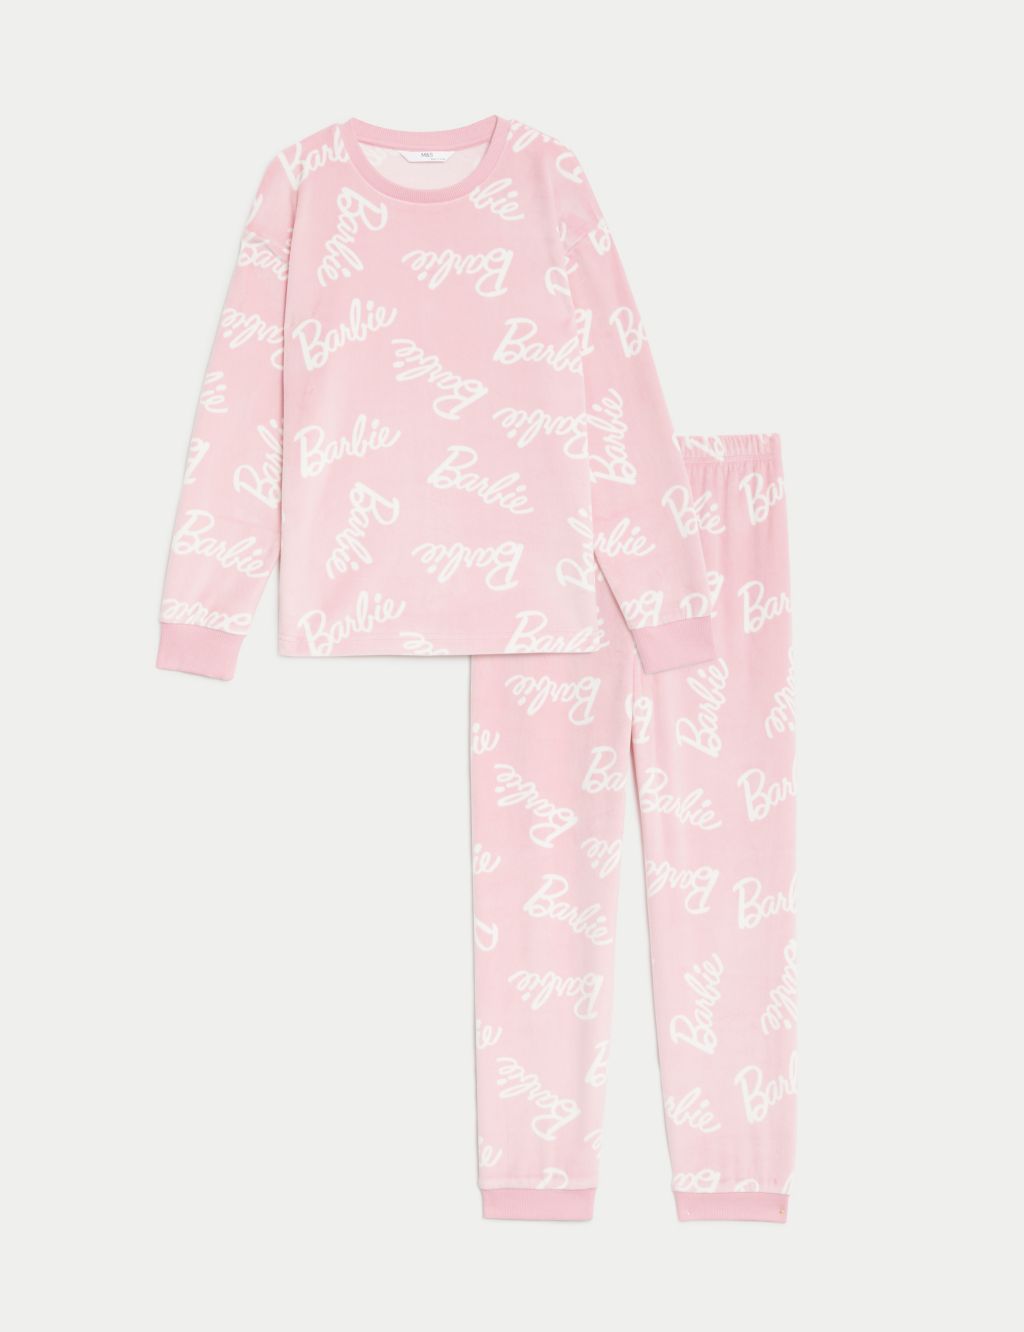 Barbie™ Velour Pyjamas (5-12 Yrs) image 1